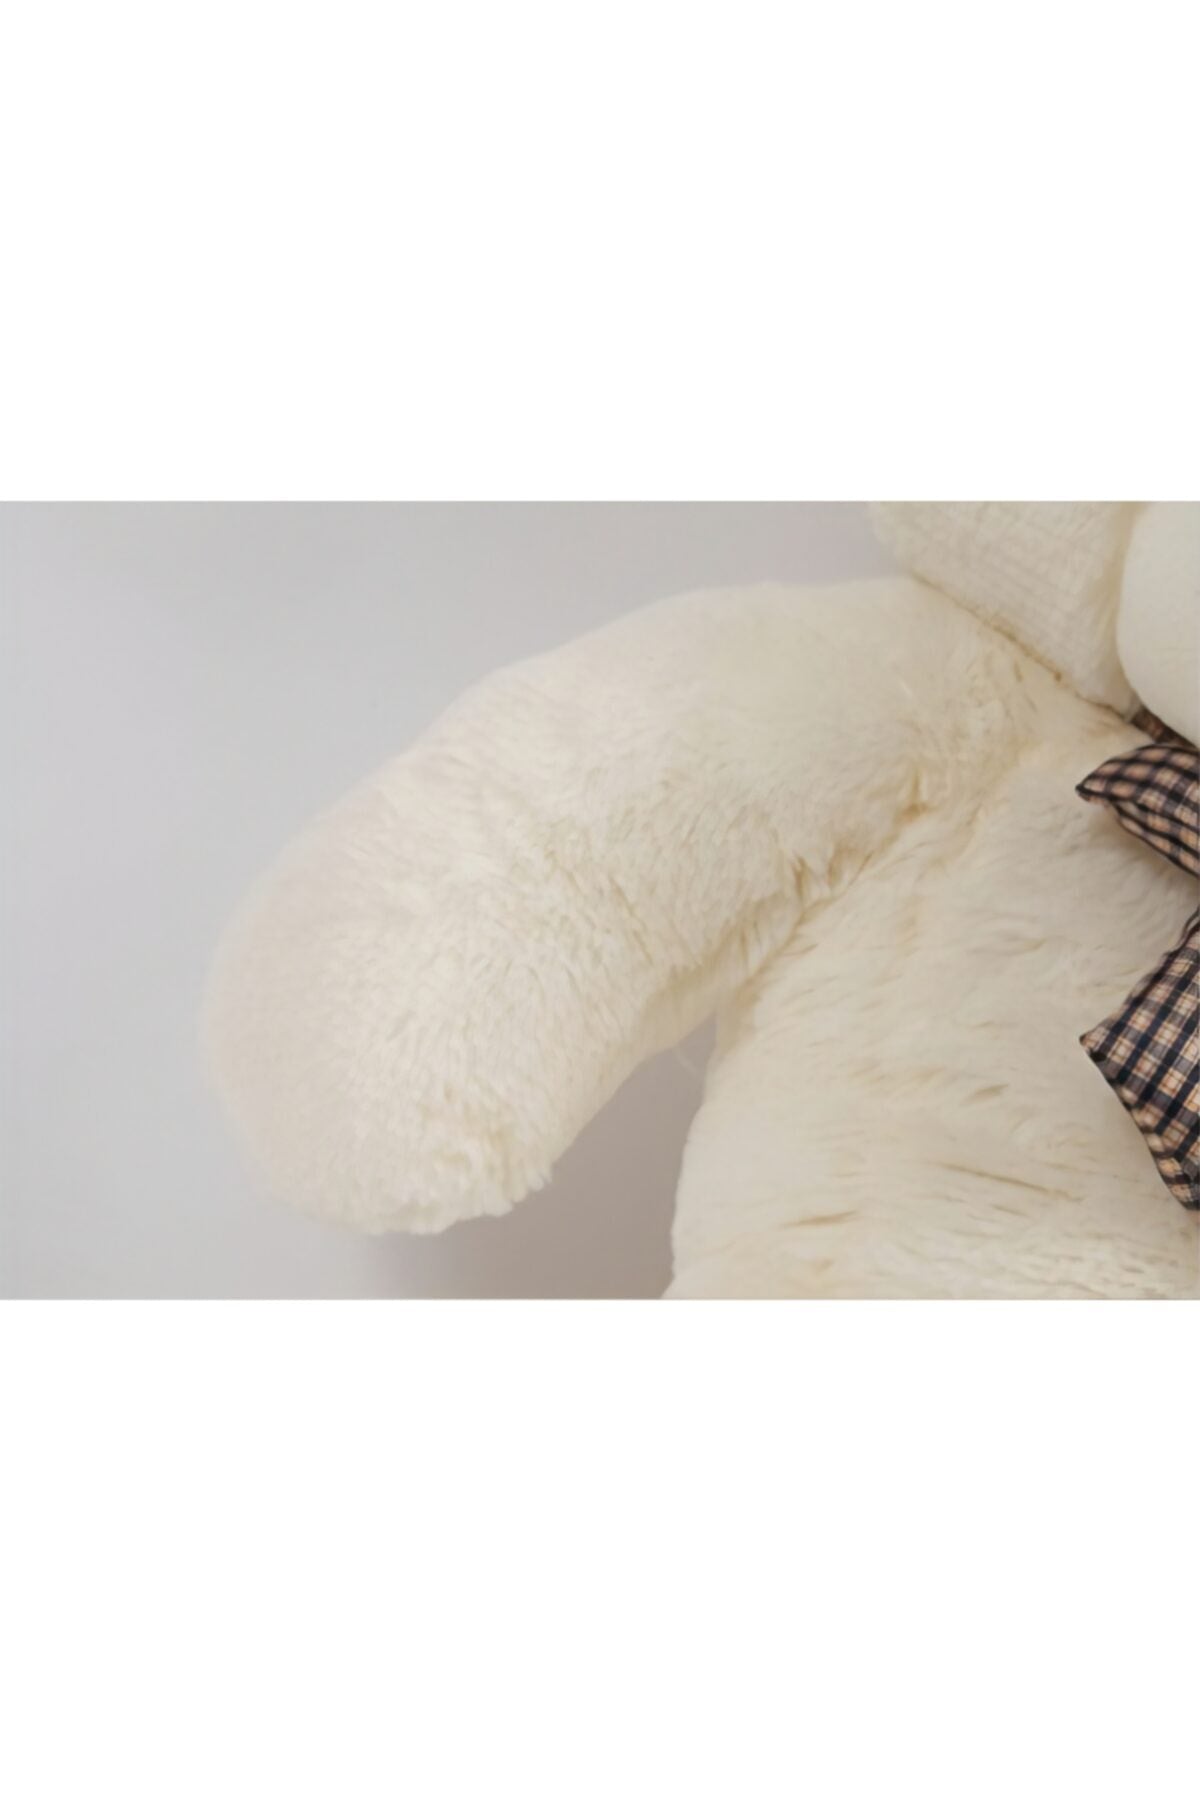 Kuki Toy 120cm White Plush Bear